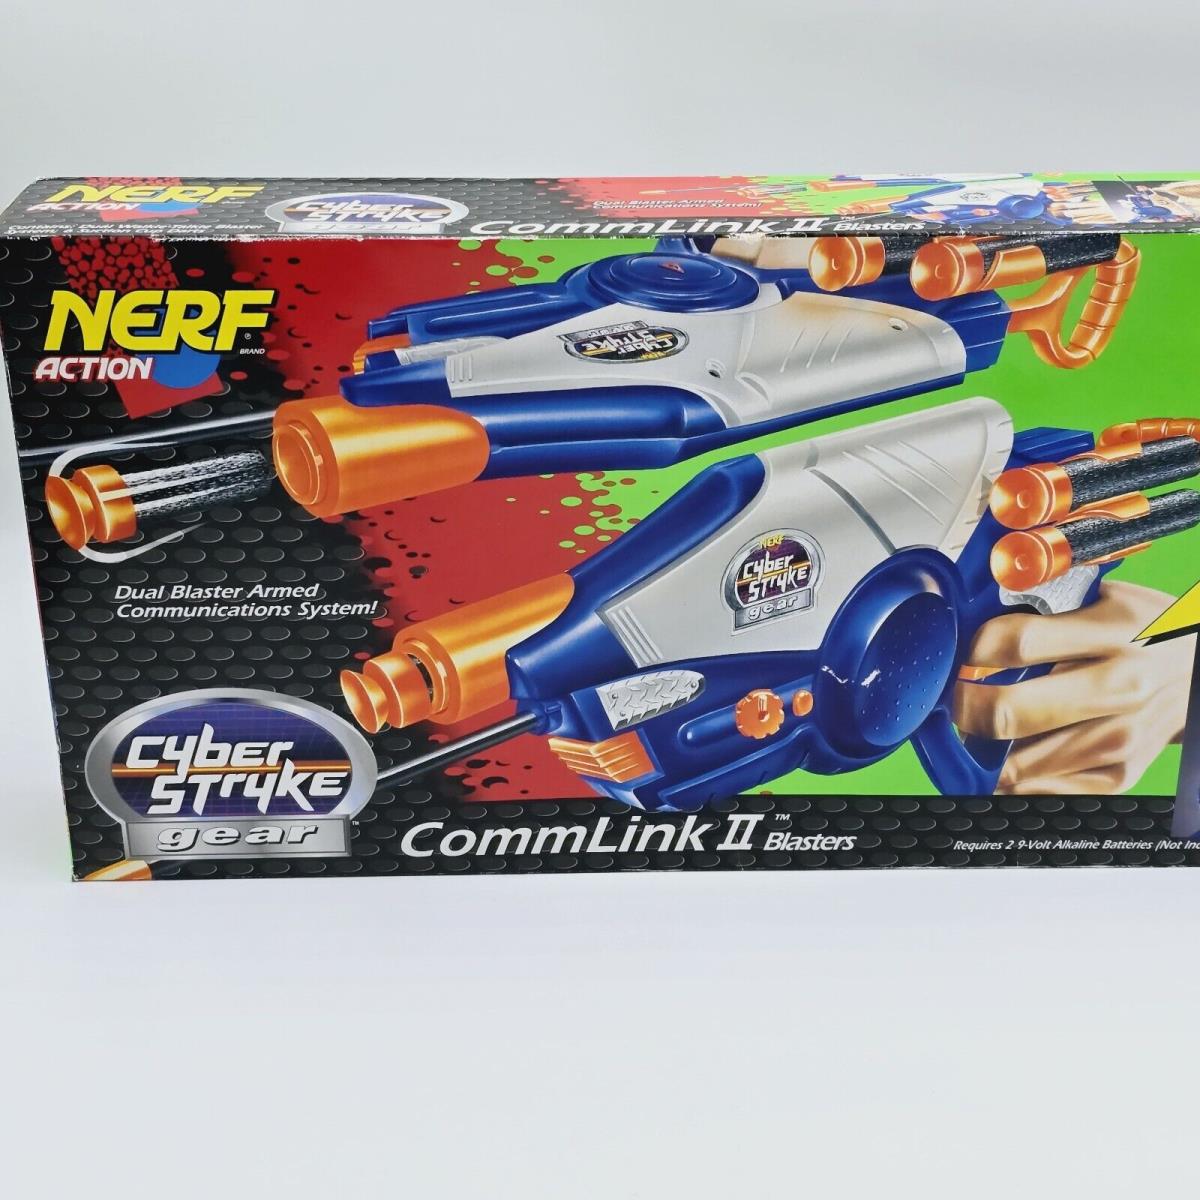 Vintage 1996/97 Nerf Commlink II Blasters Cyber Stryke